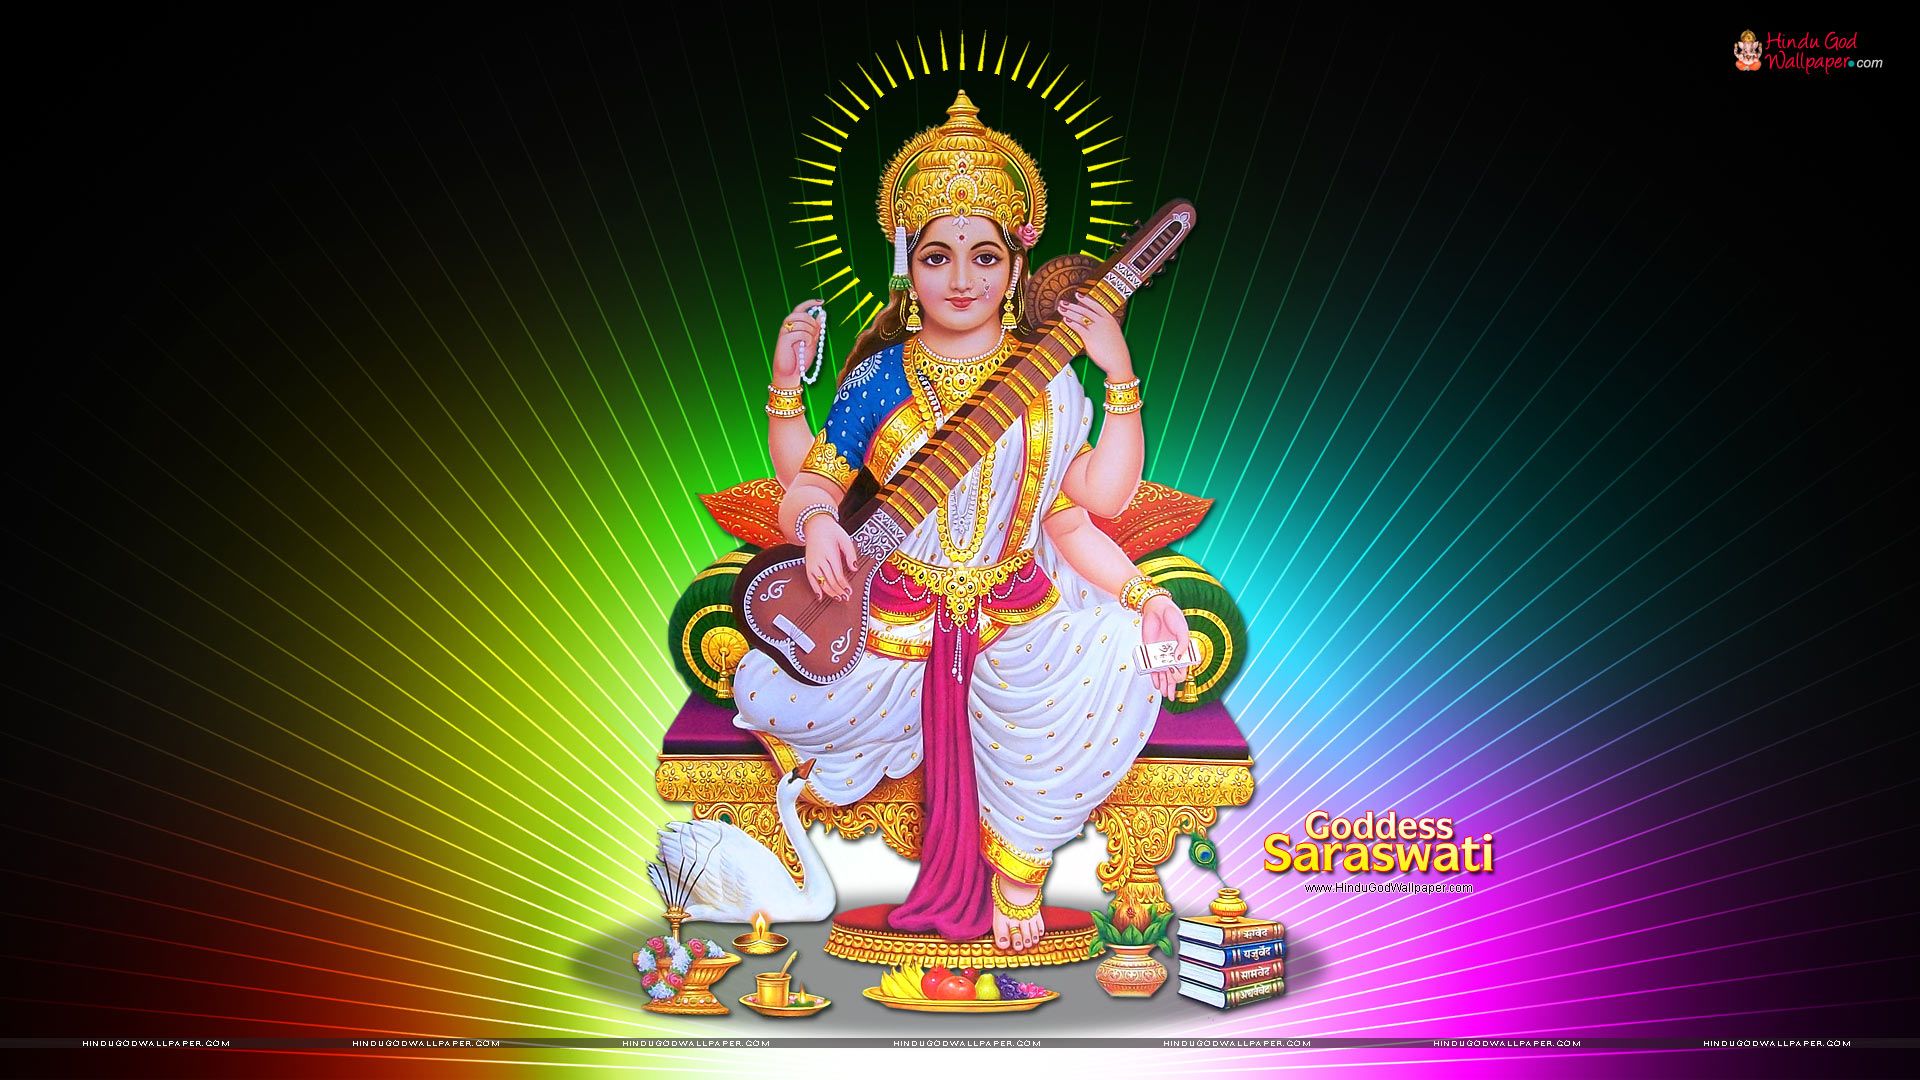 Goddess Saraswati Hd Wallpaper, Images, Photos Free - New Saraswati - HD Wallpaper 